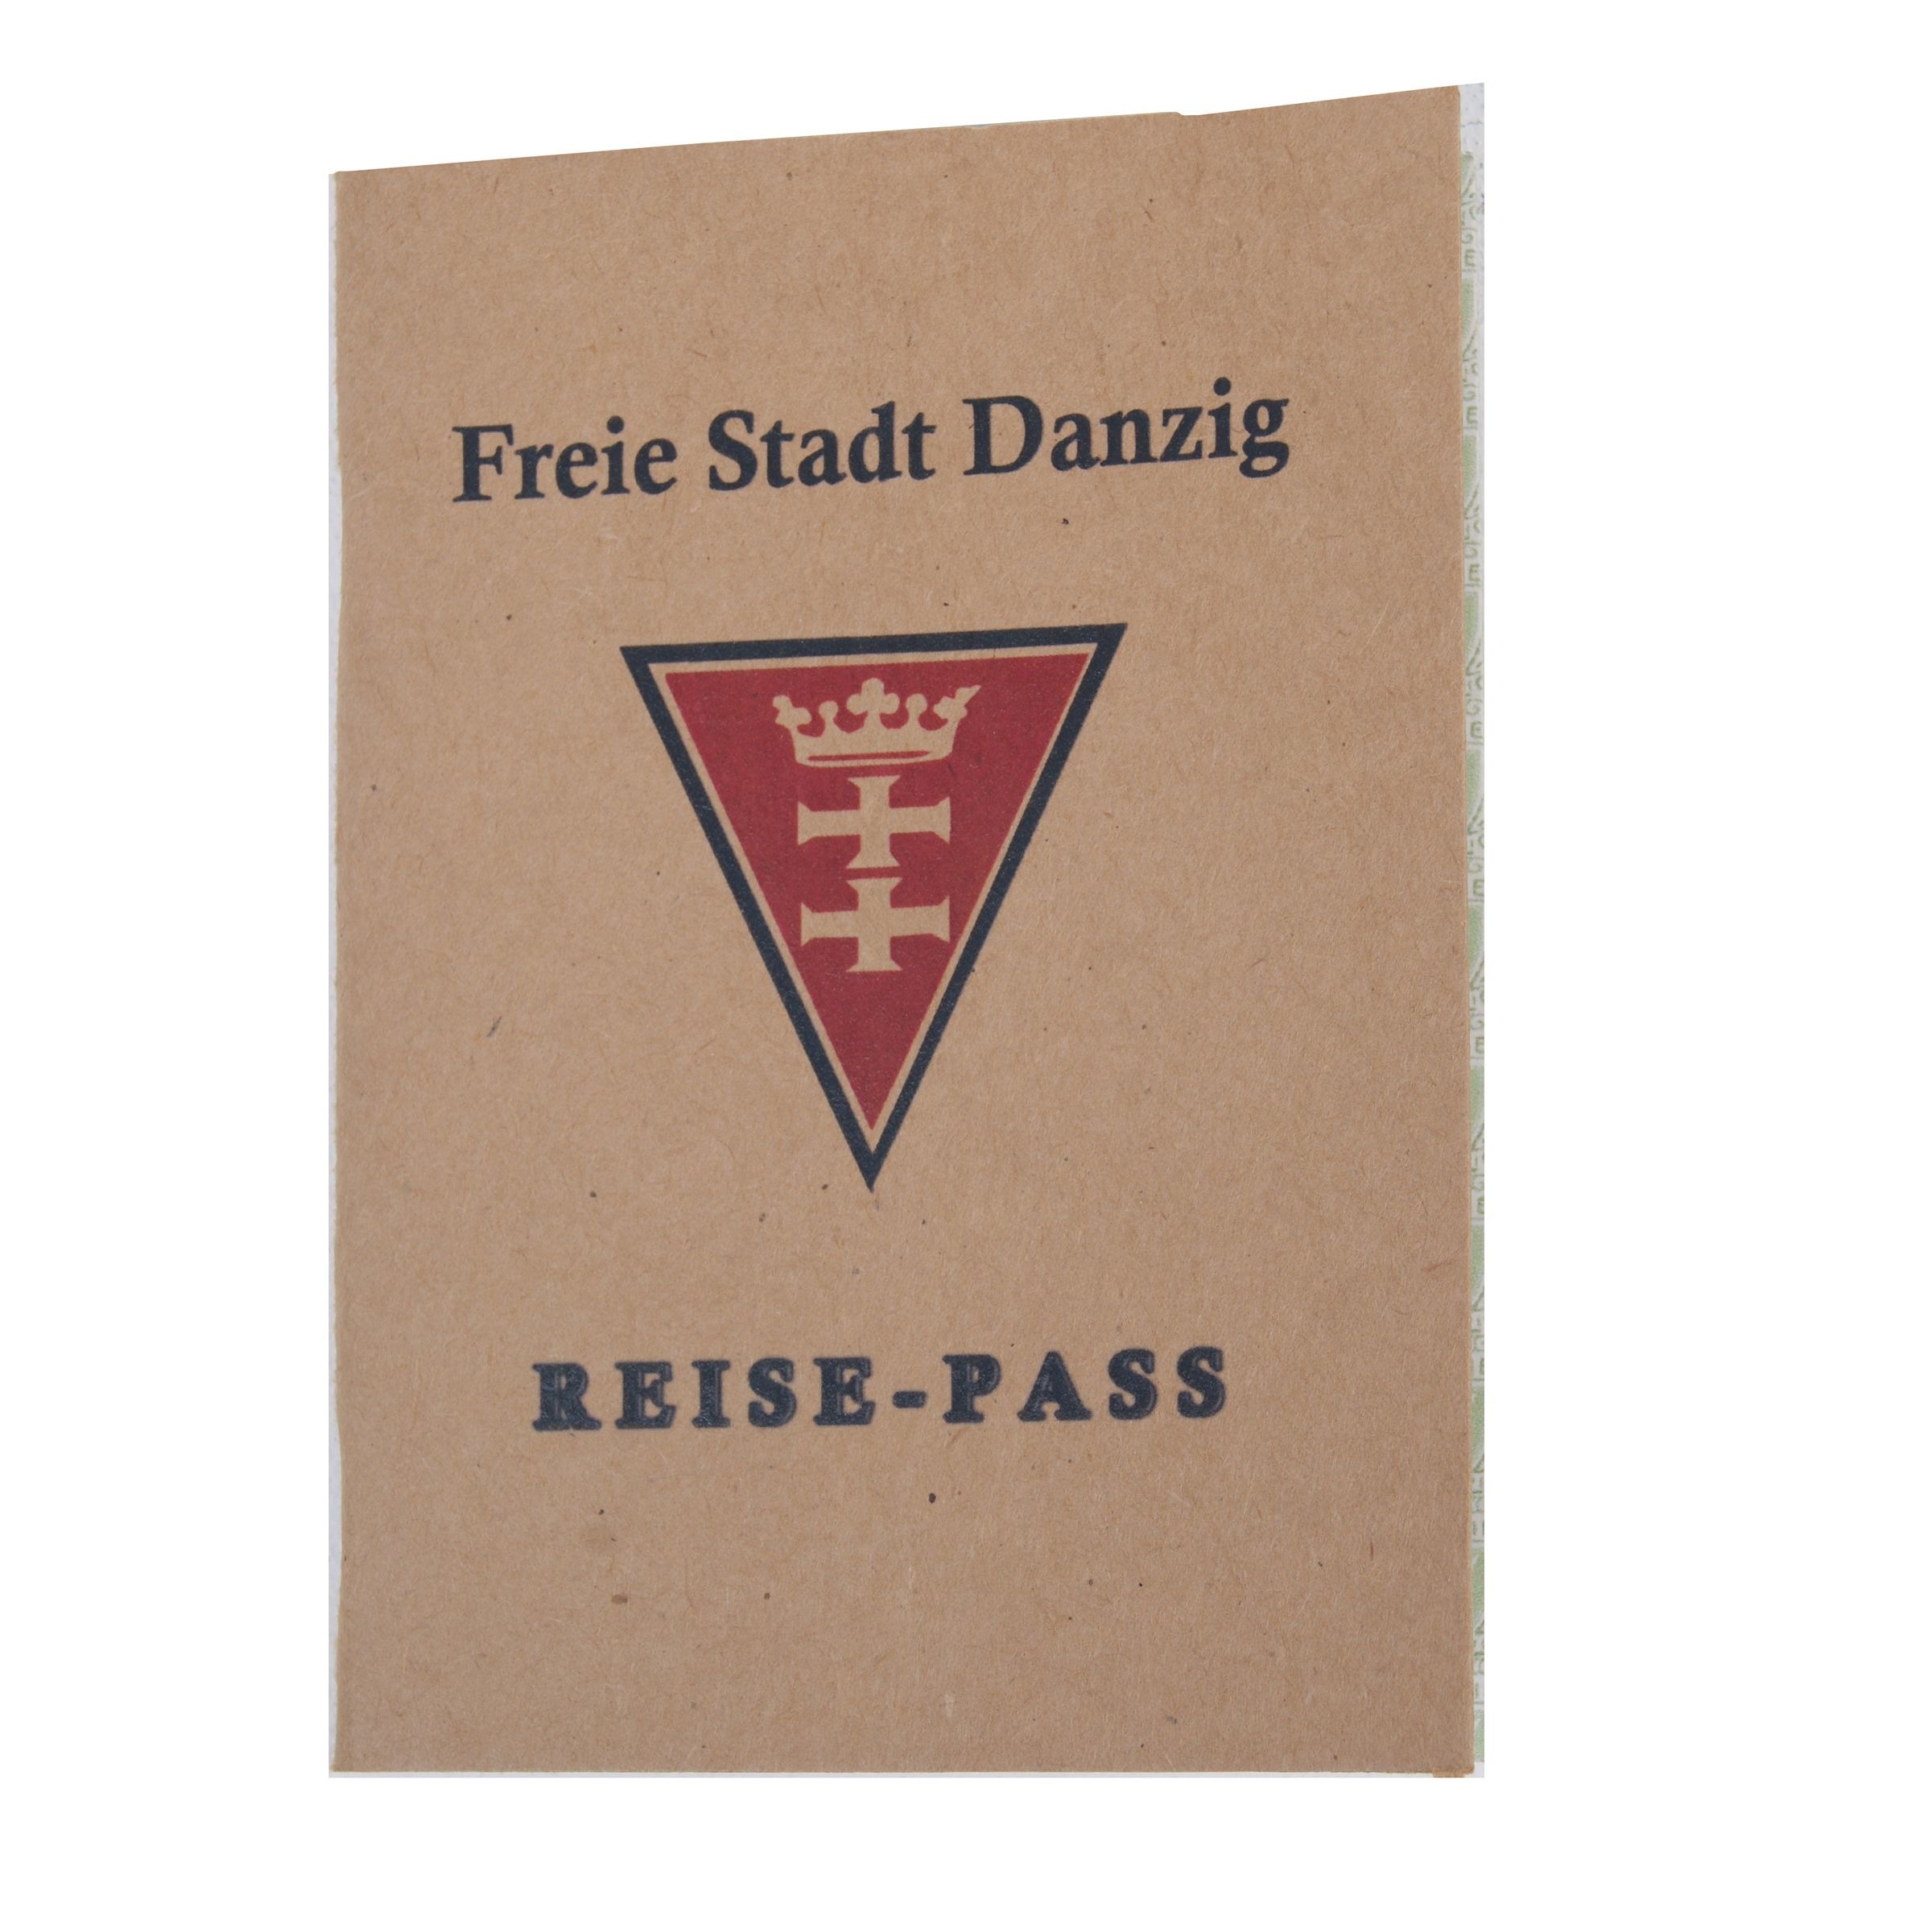 Free City of Danzing passport - reprint